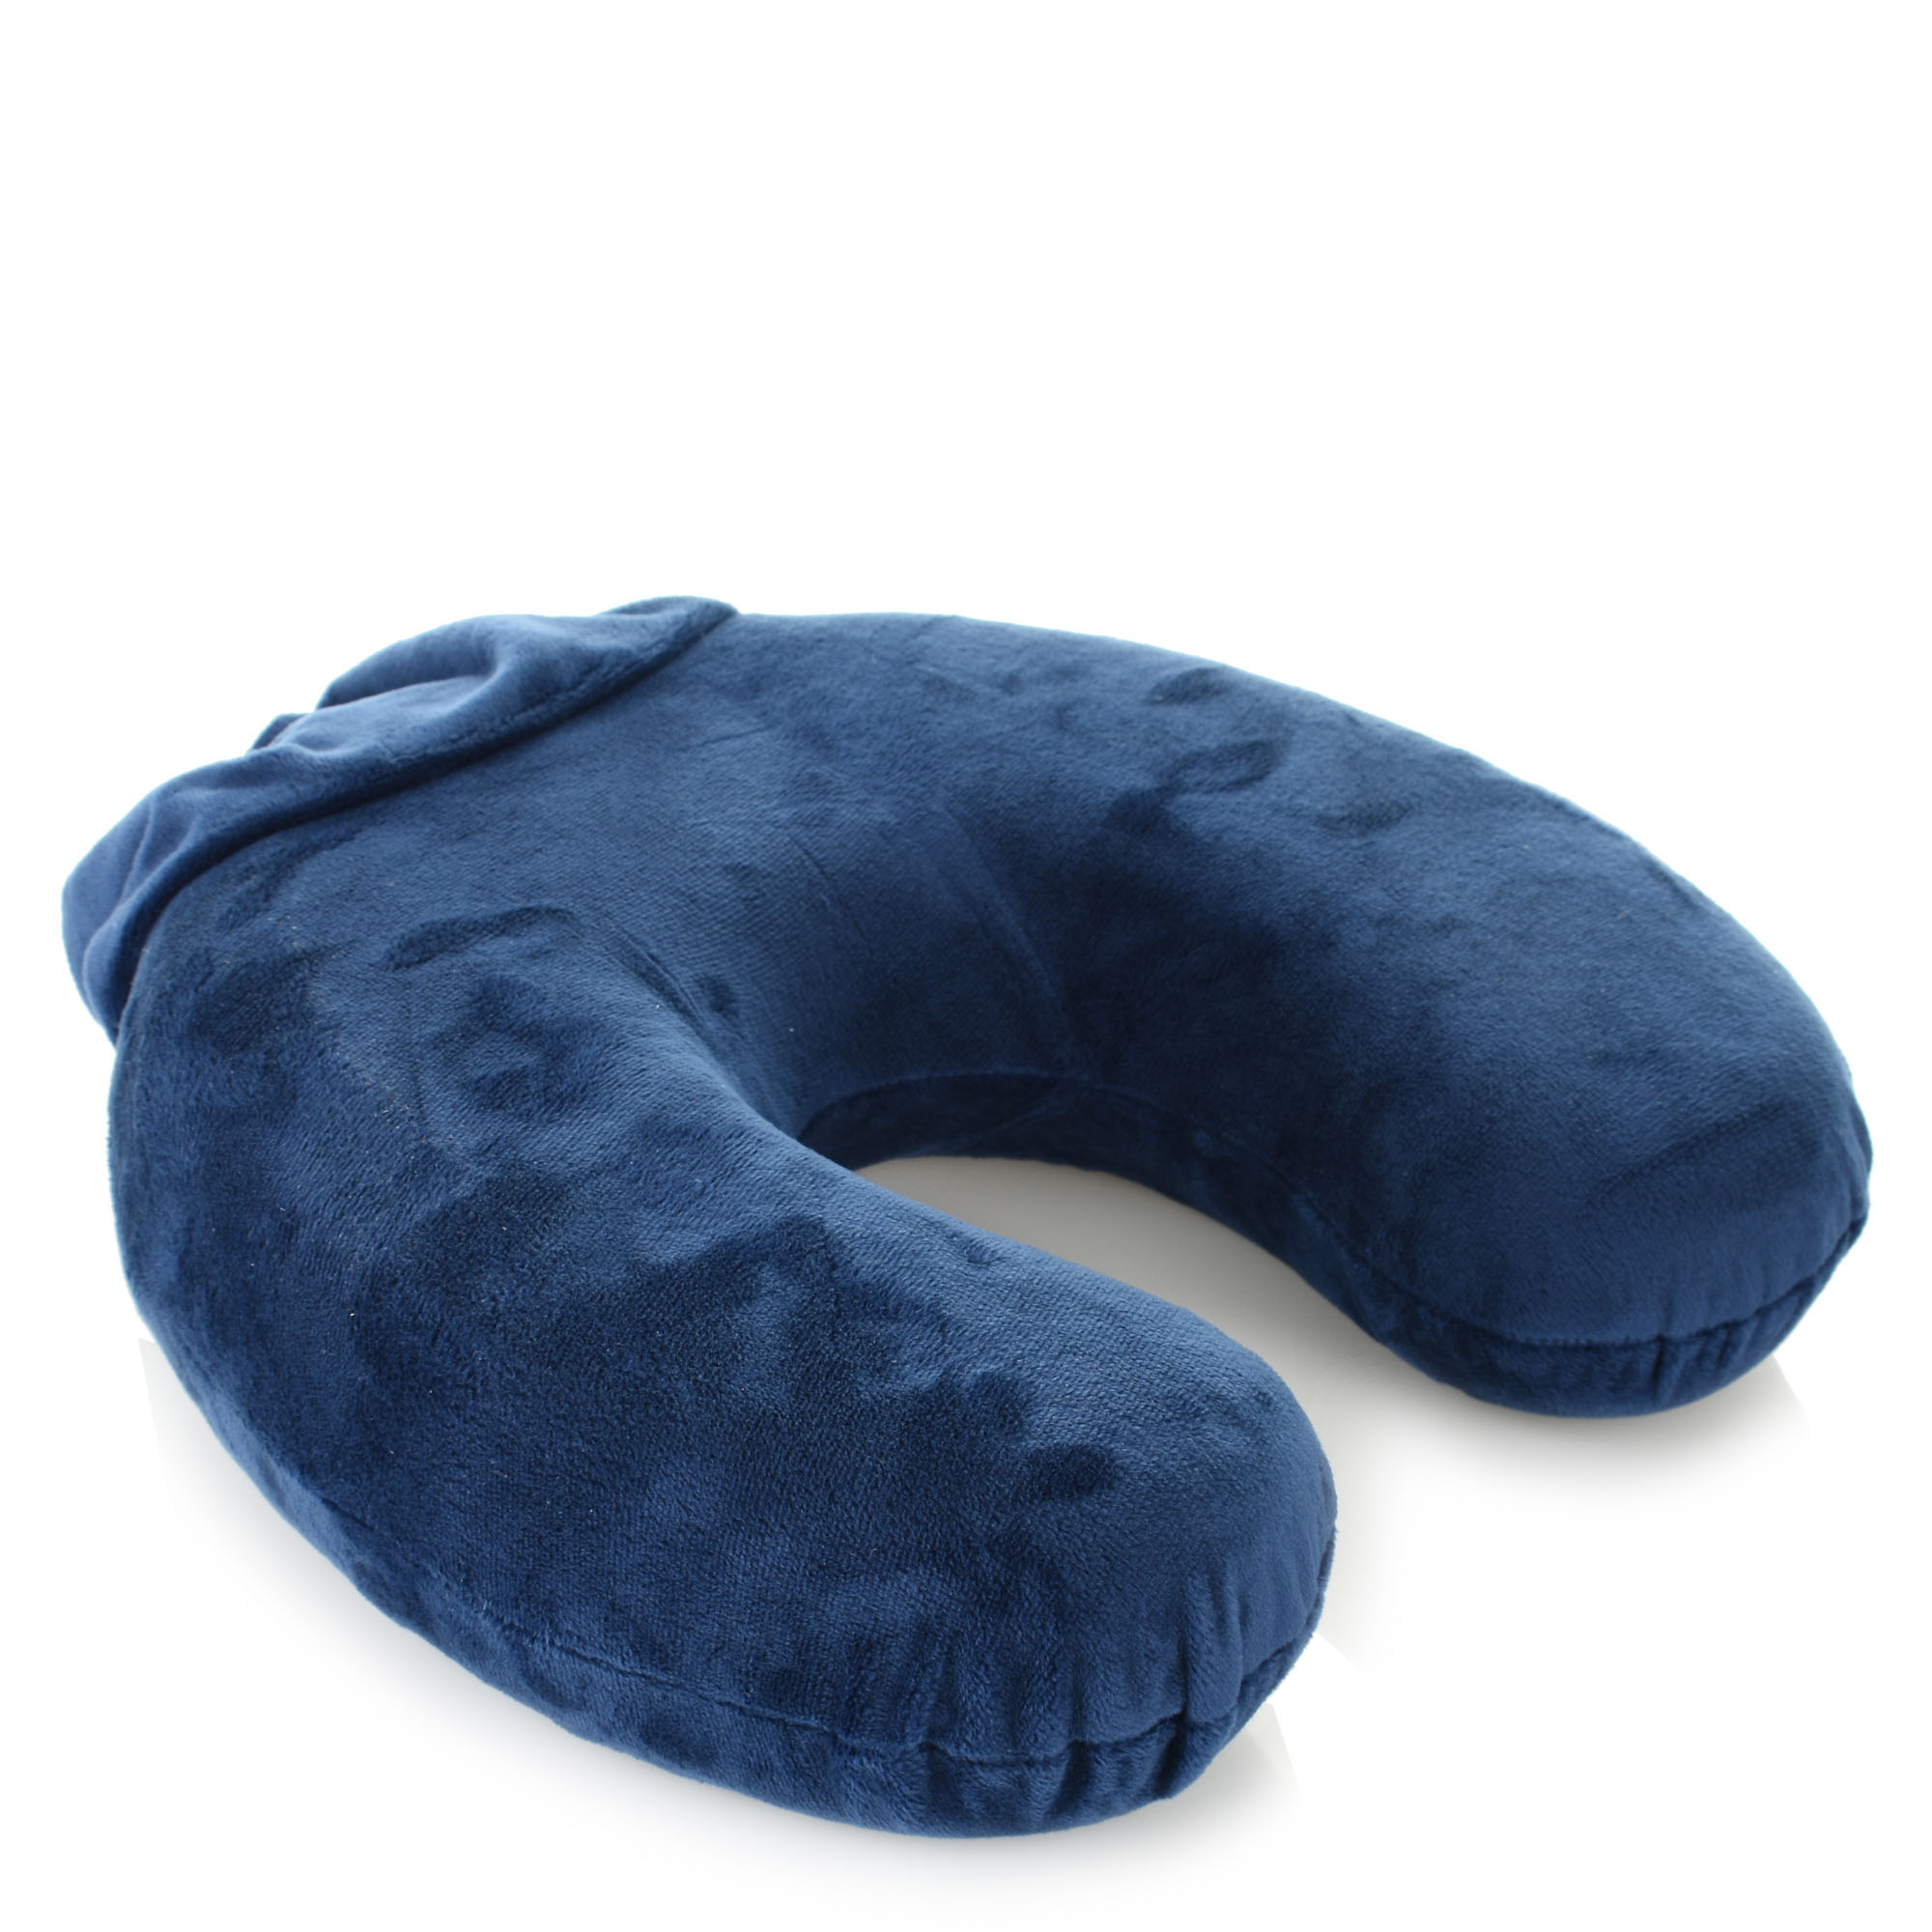 Samsonite Μαξιλάρι Ταξιδίου Samsonite Memory Foam Pillow 121244-1549 Midnight Blue